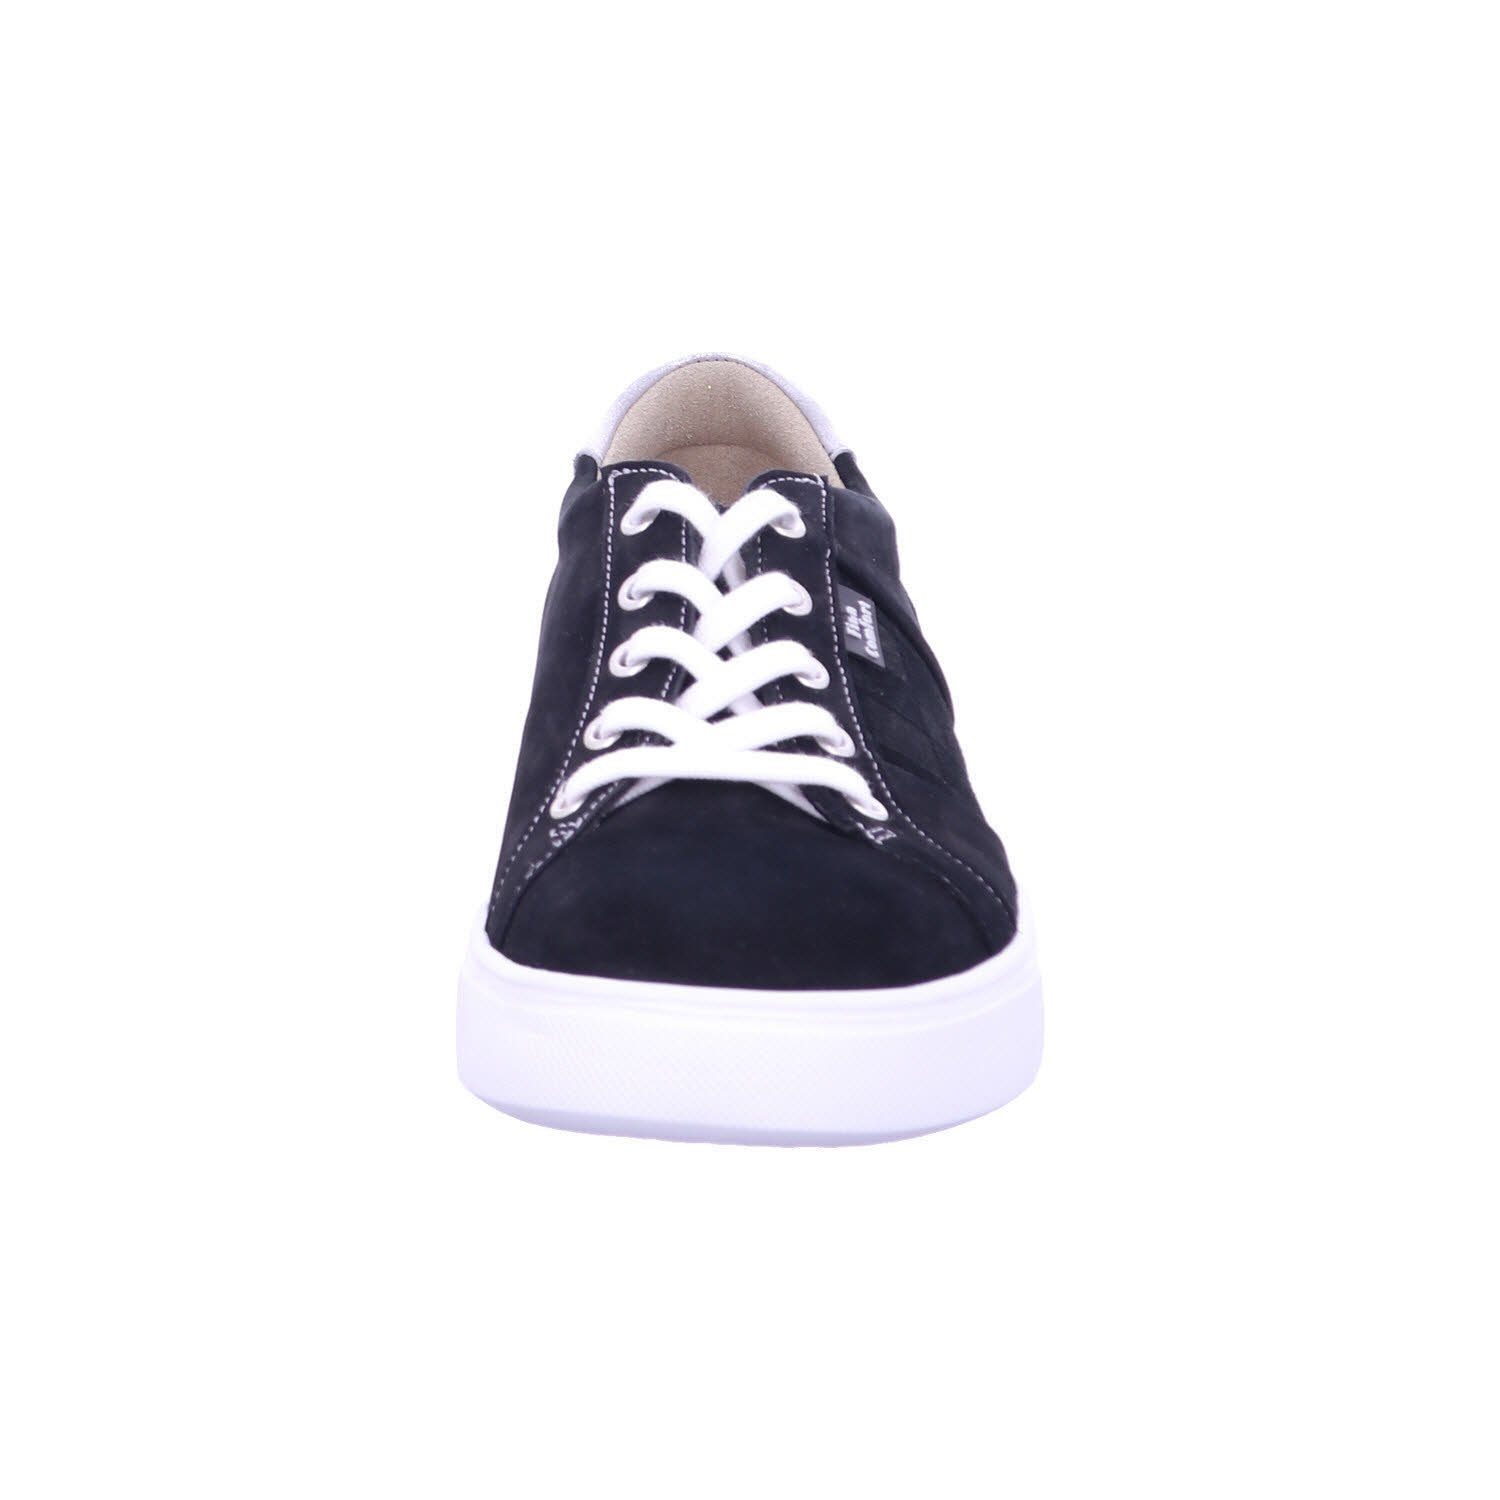 Finn black/nero/silber Sneaker Comfort